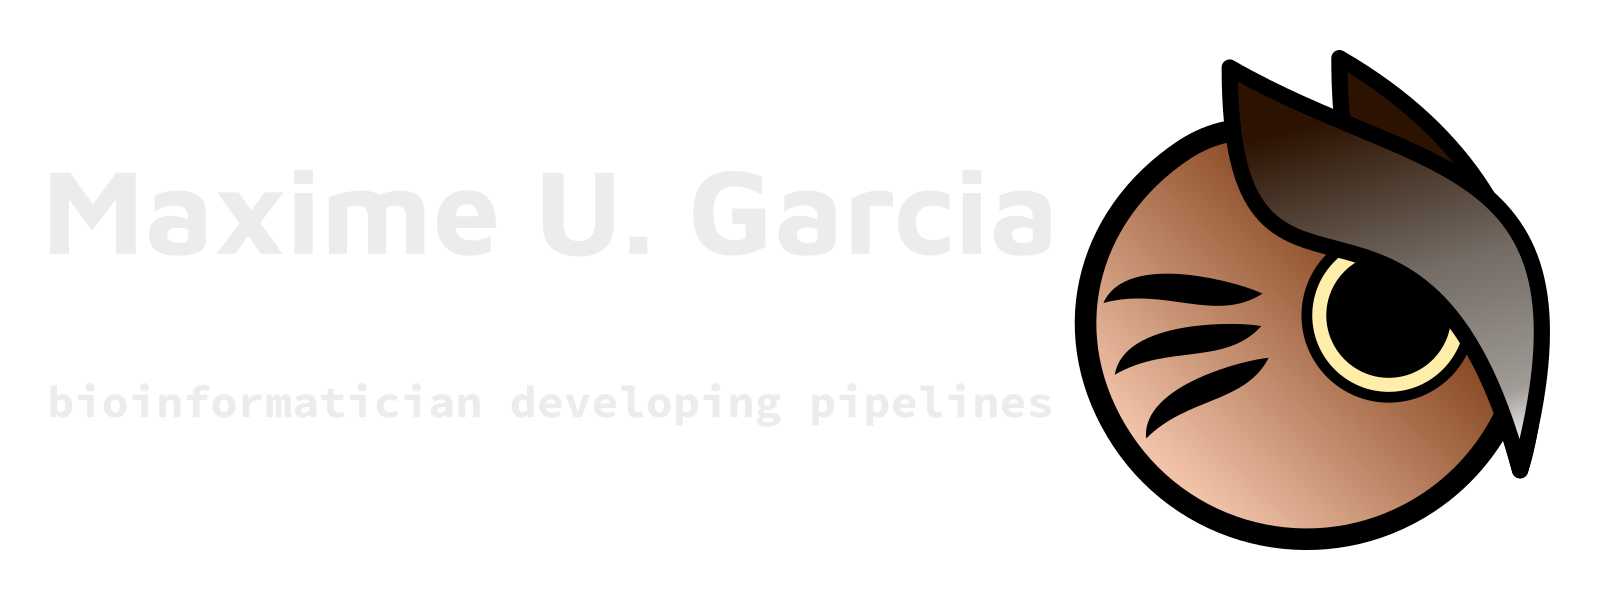 Maxime U. Garcia, Bioinformatician developing pipelines + an owl as a logo